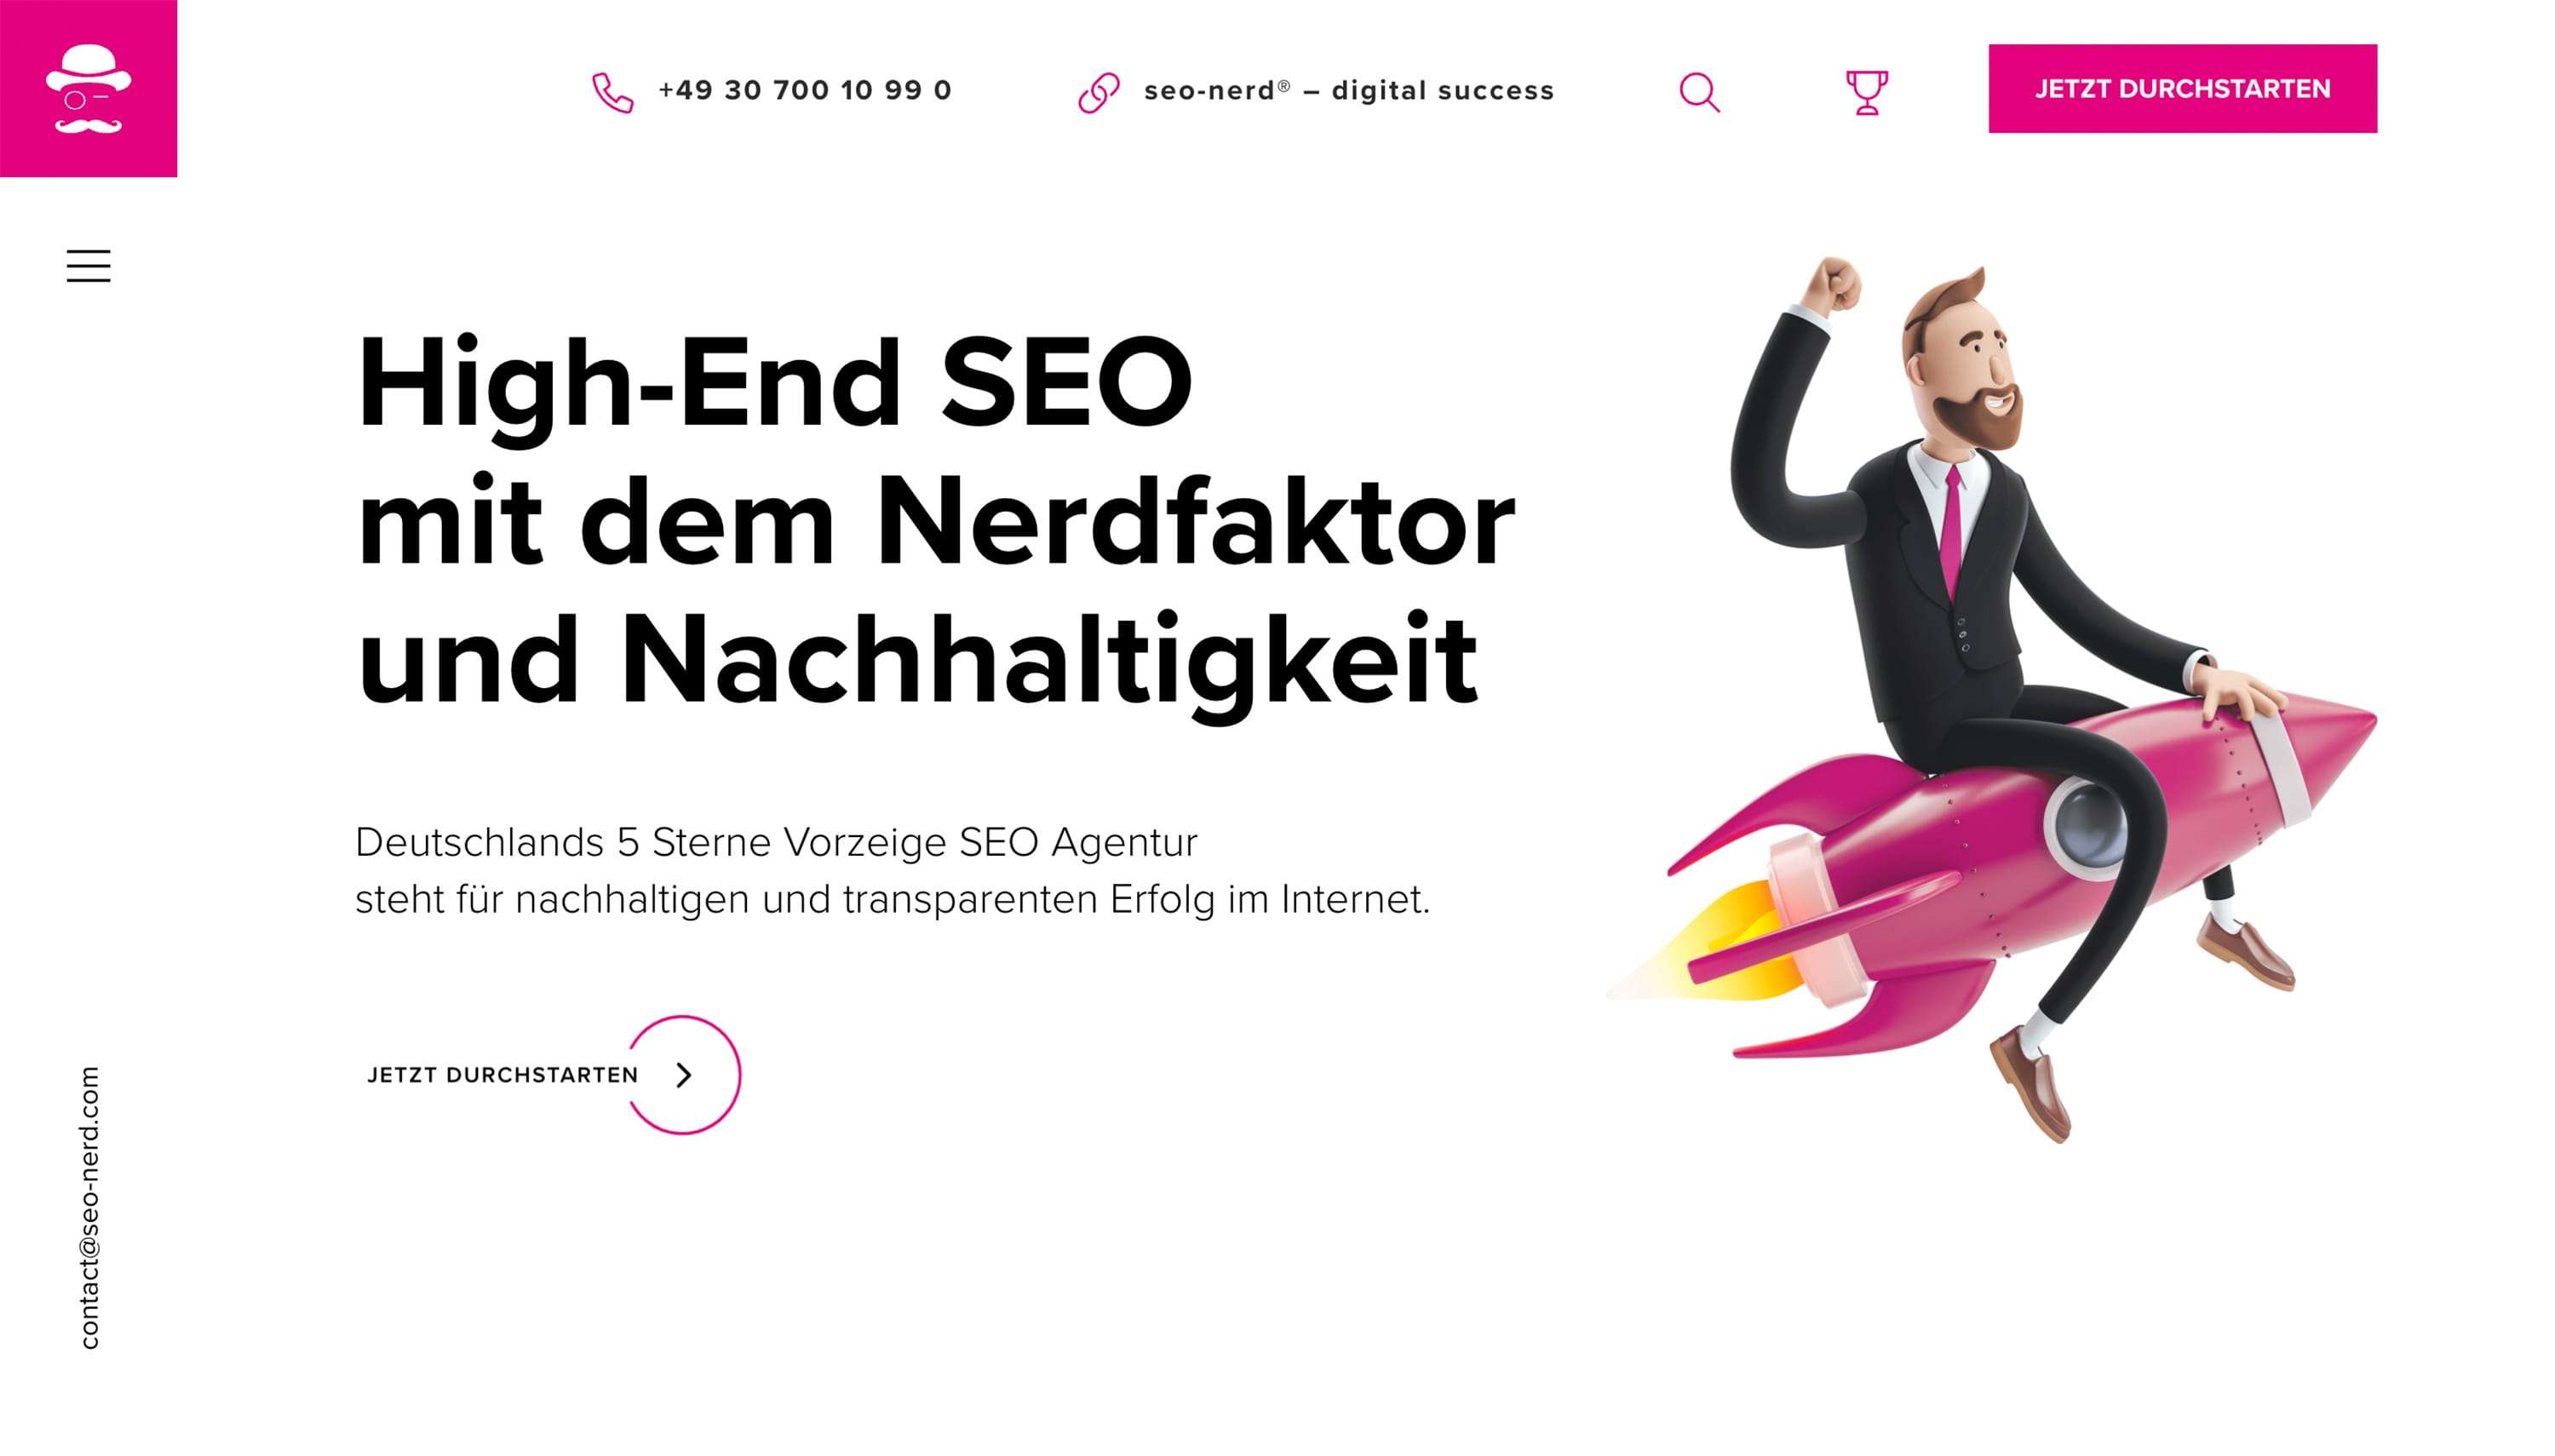 Deutschlands 5 Sterne High-End SEO Agentur steht für nachhaltigen und transparenten Erfolg im Internet.